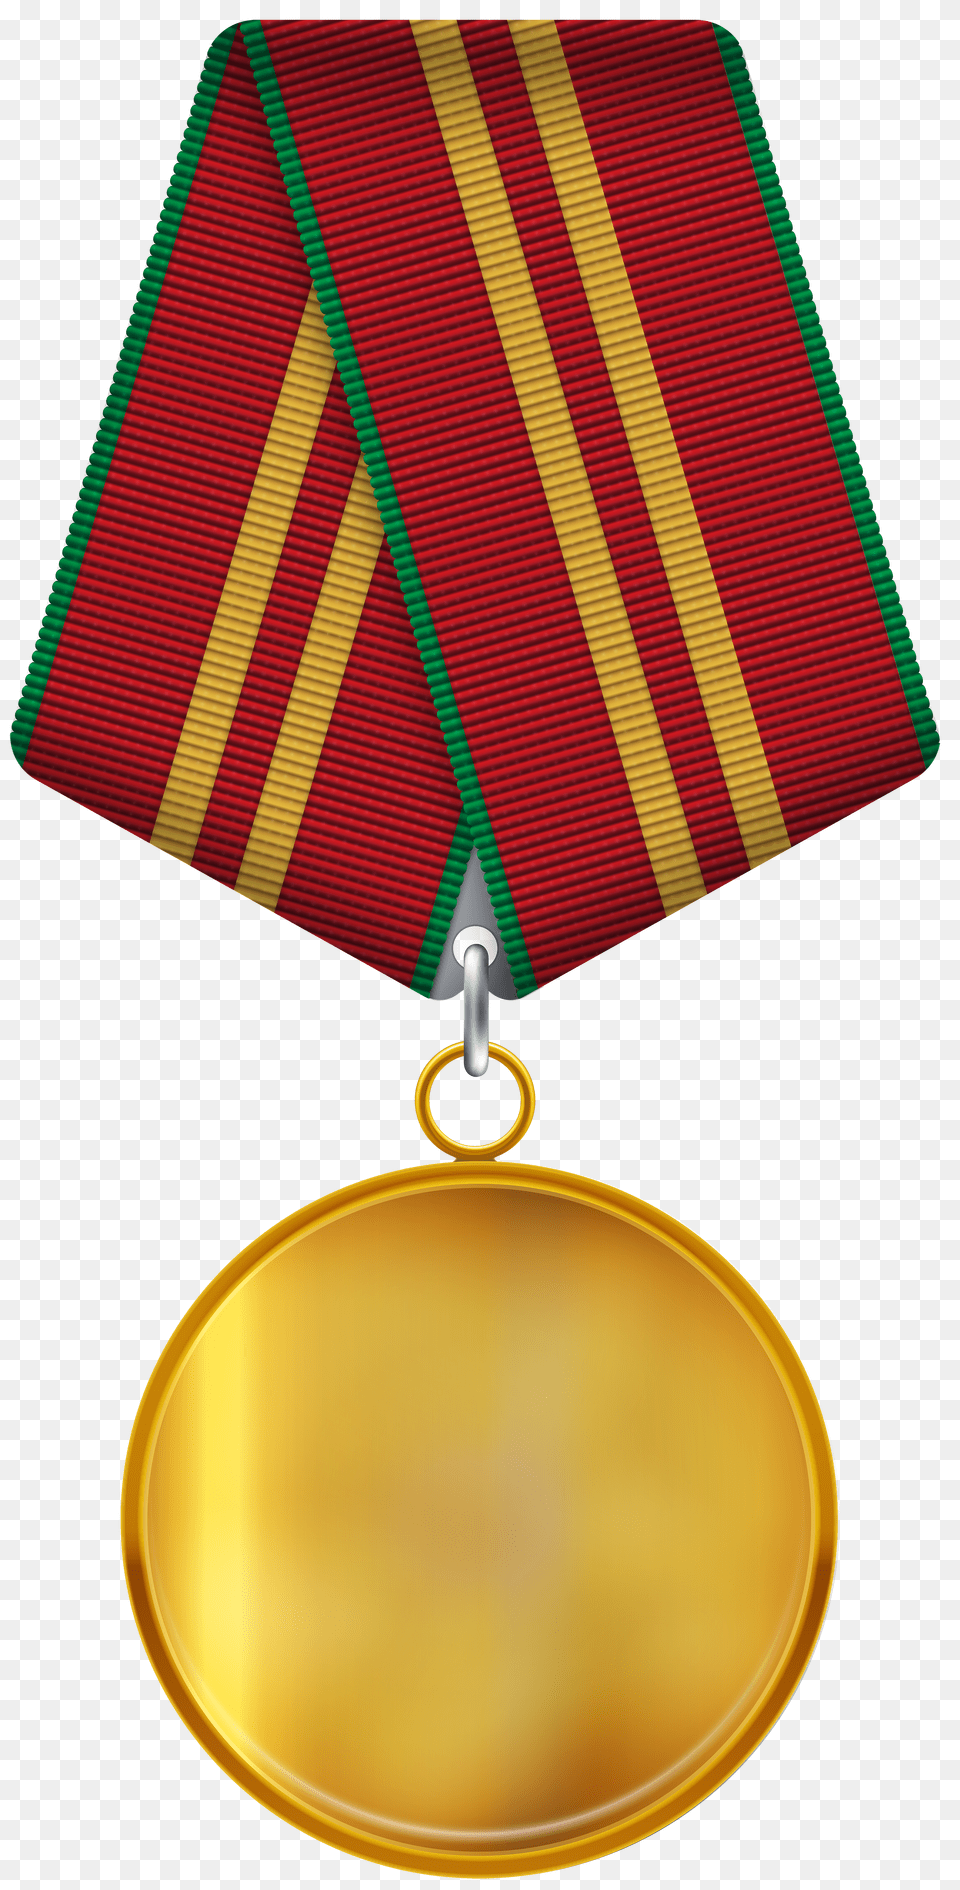 Medal Png Image